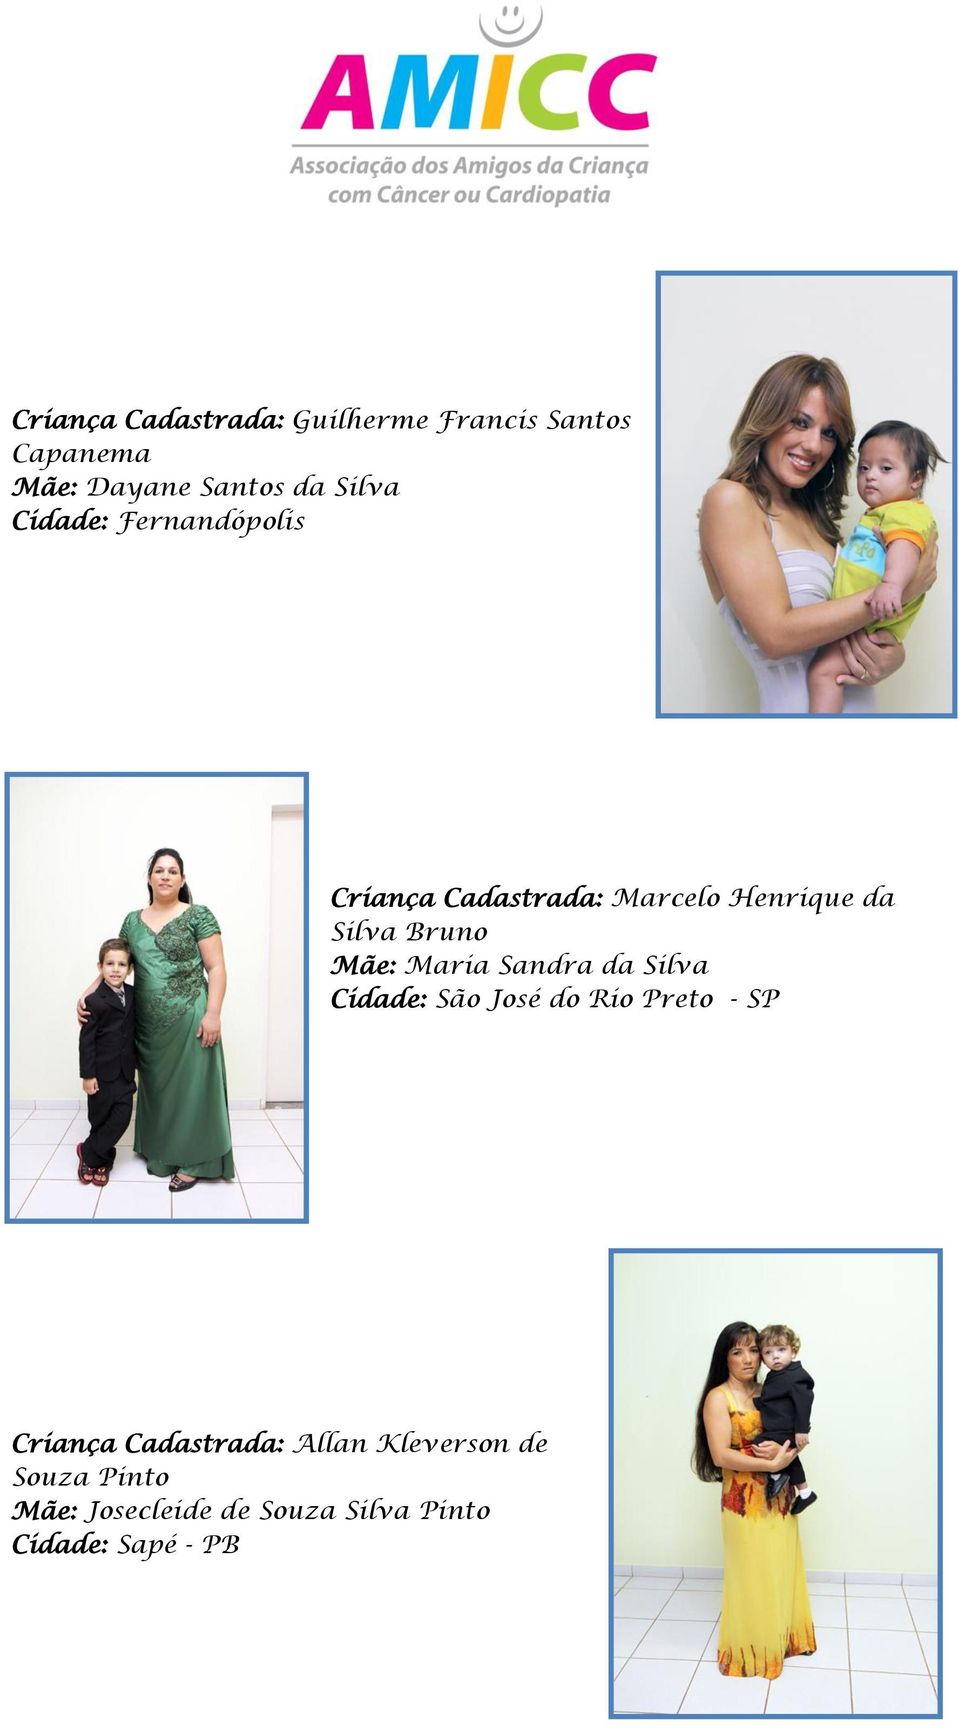 Mãe: Maria Sandra da Silva Cidade: São José do Rio Preto - SP Criança